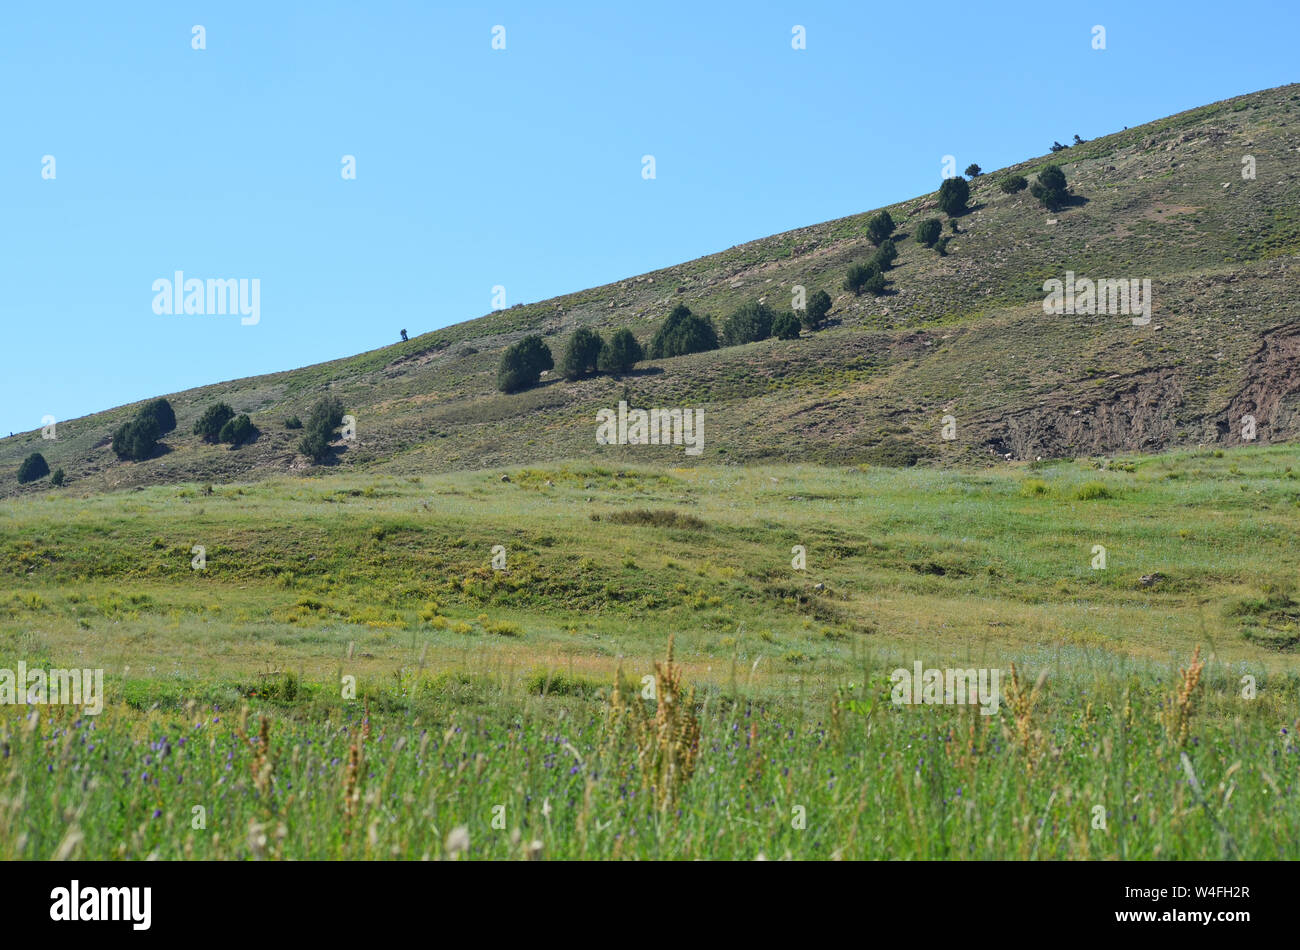 Hissar or Gissar mountains nature reserve, southeastern Uzbekistan Stock Photo